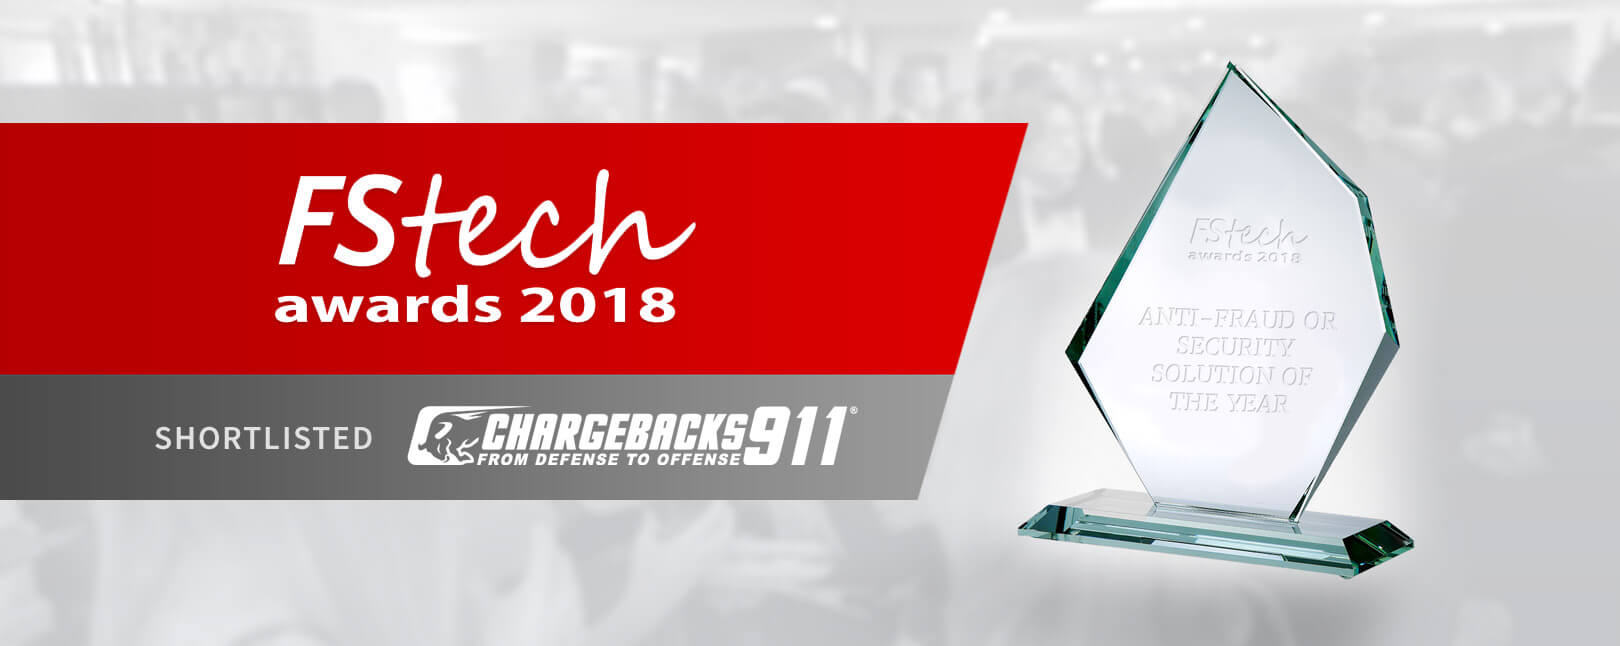 FStech Awards 2018